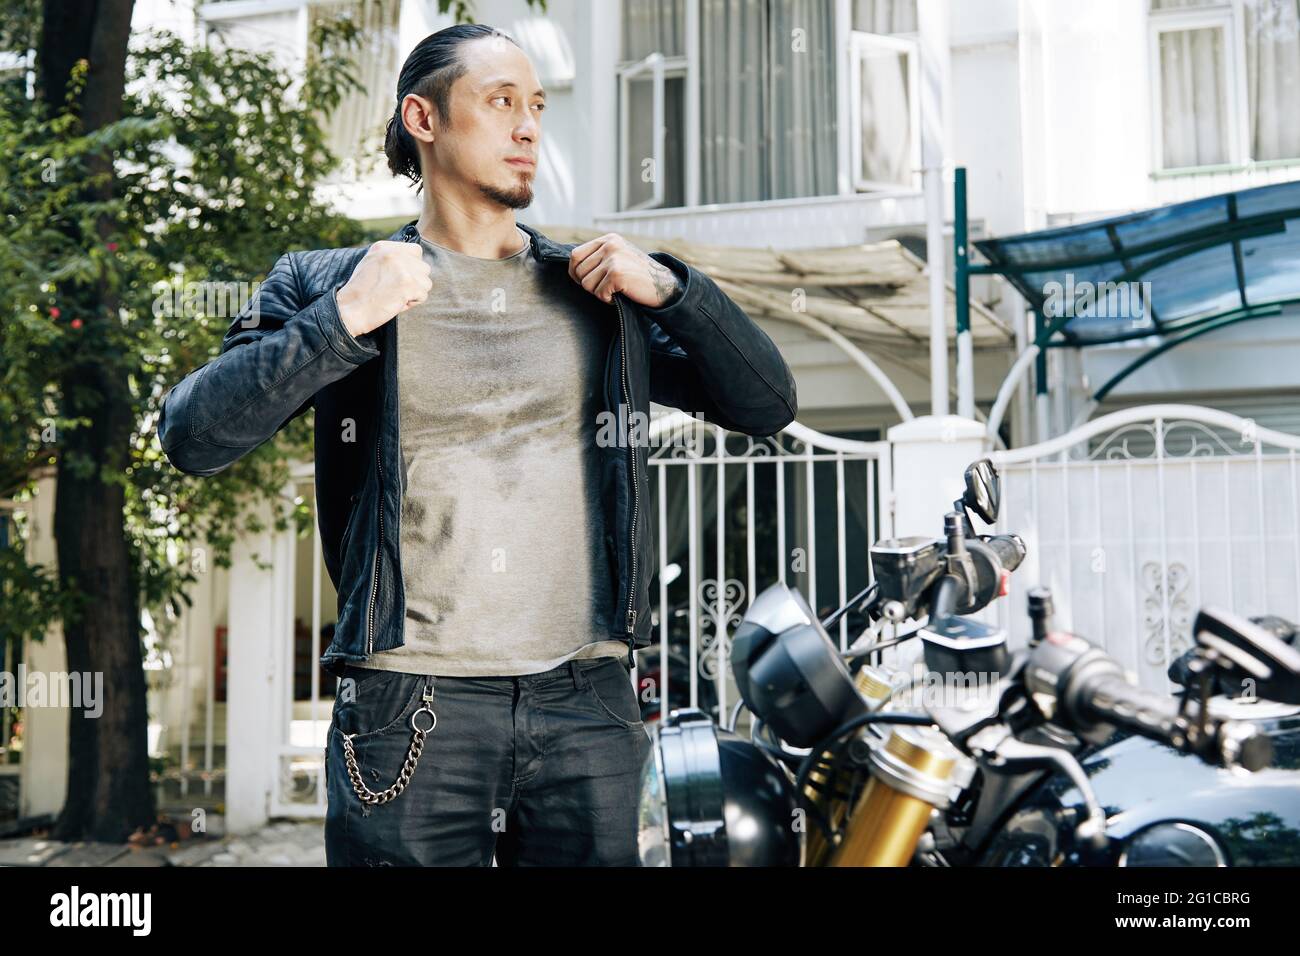 Nachdenklicher ernsthafter Motorradfahrer im verschwitzten T-Shirt, der beim Fahrrad steht und eine schwarze Lederjacke aufsetzt Stockfoto